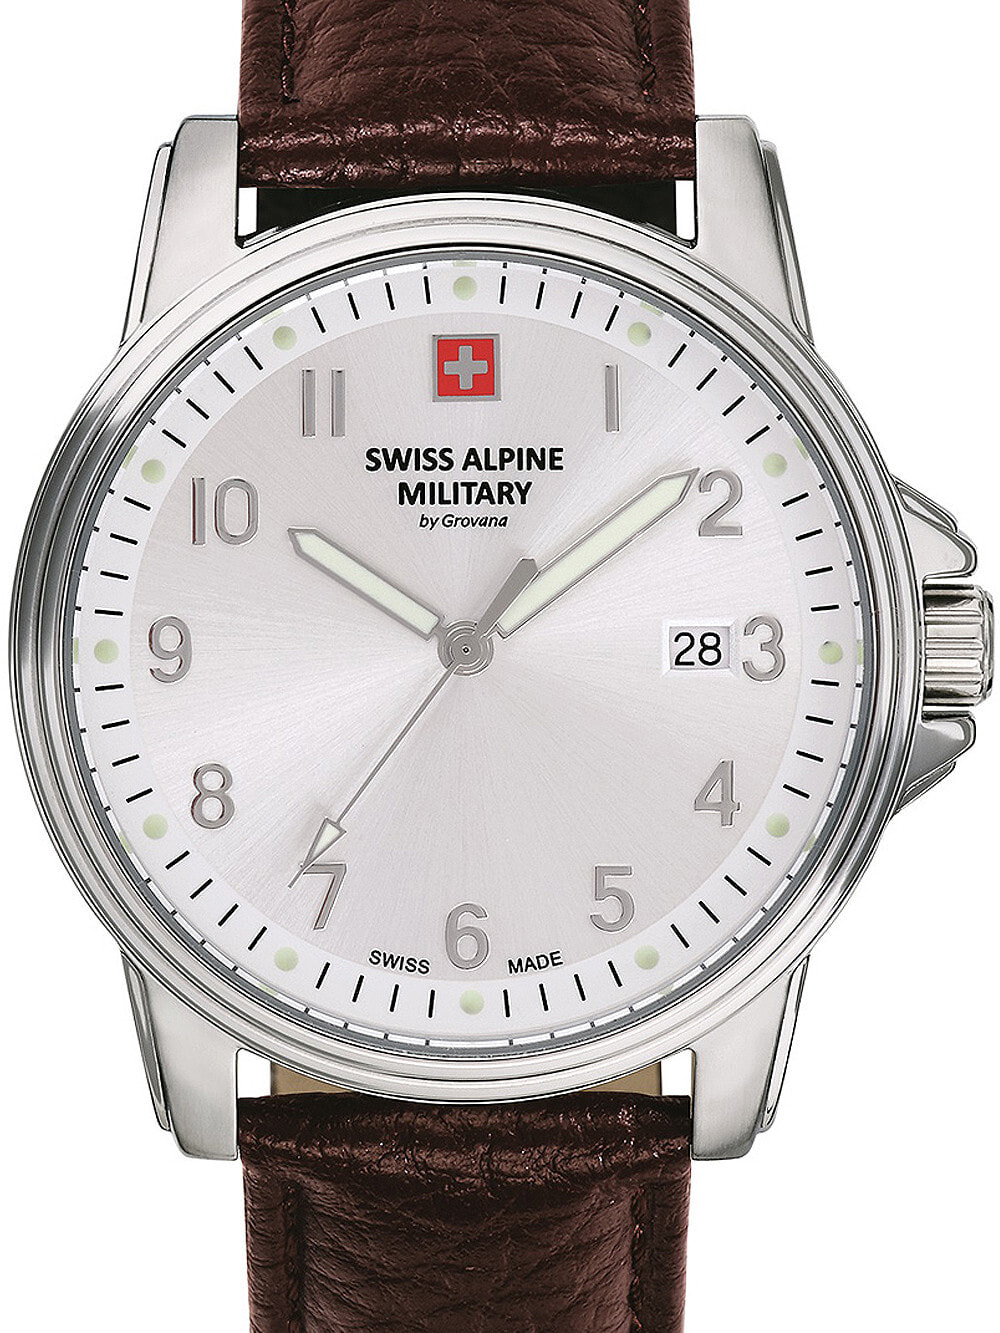 Мужские наручные часы с коричневым кожаным ремешком Swiss Alpine Military 7011.1532 mens 40mm 10ATM